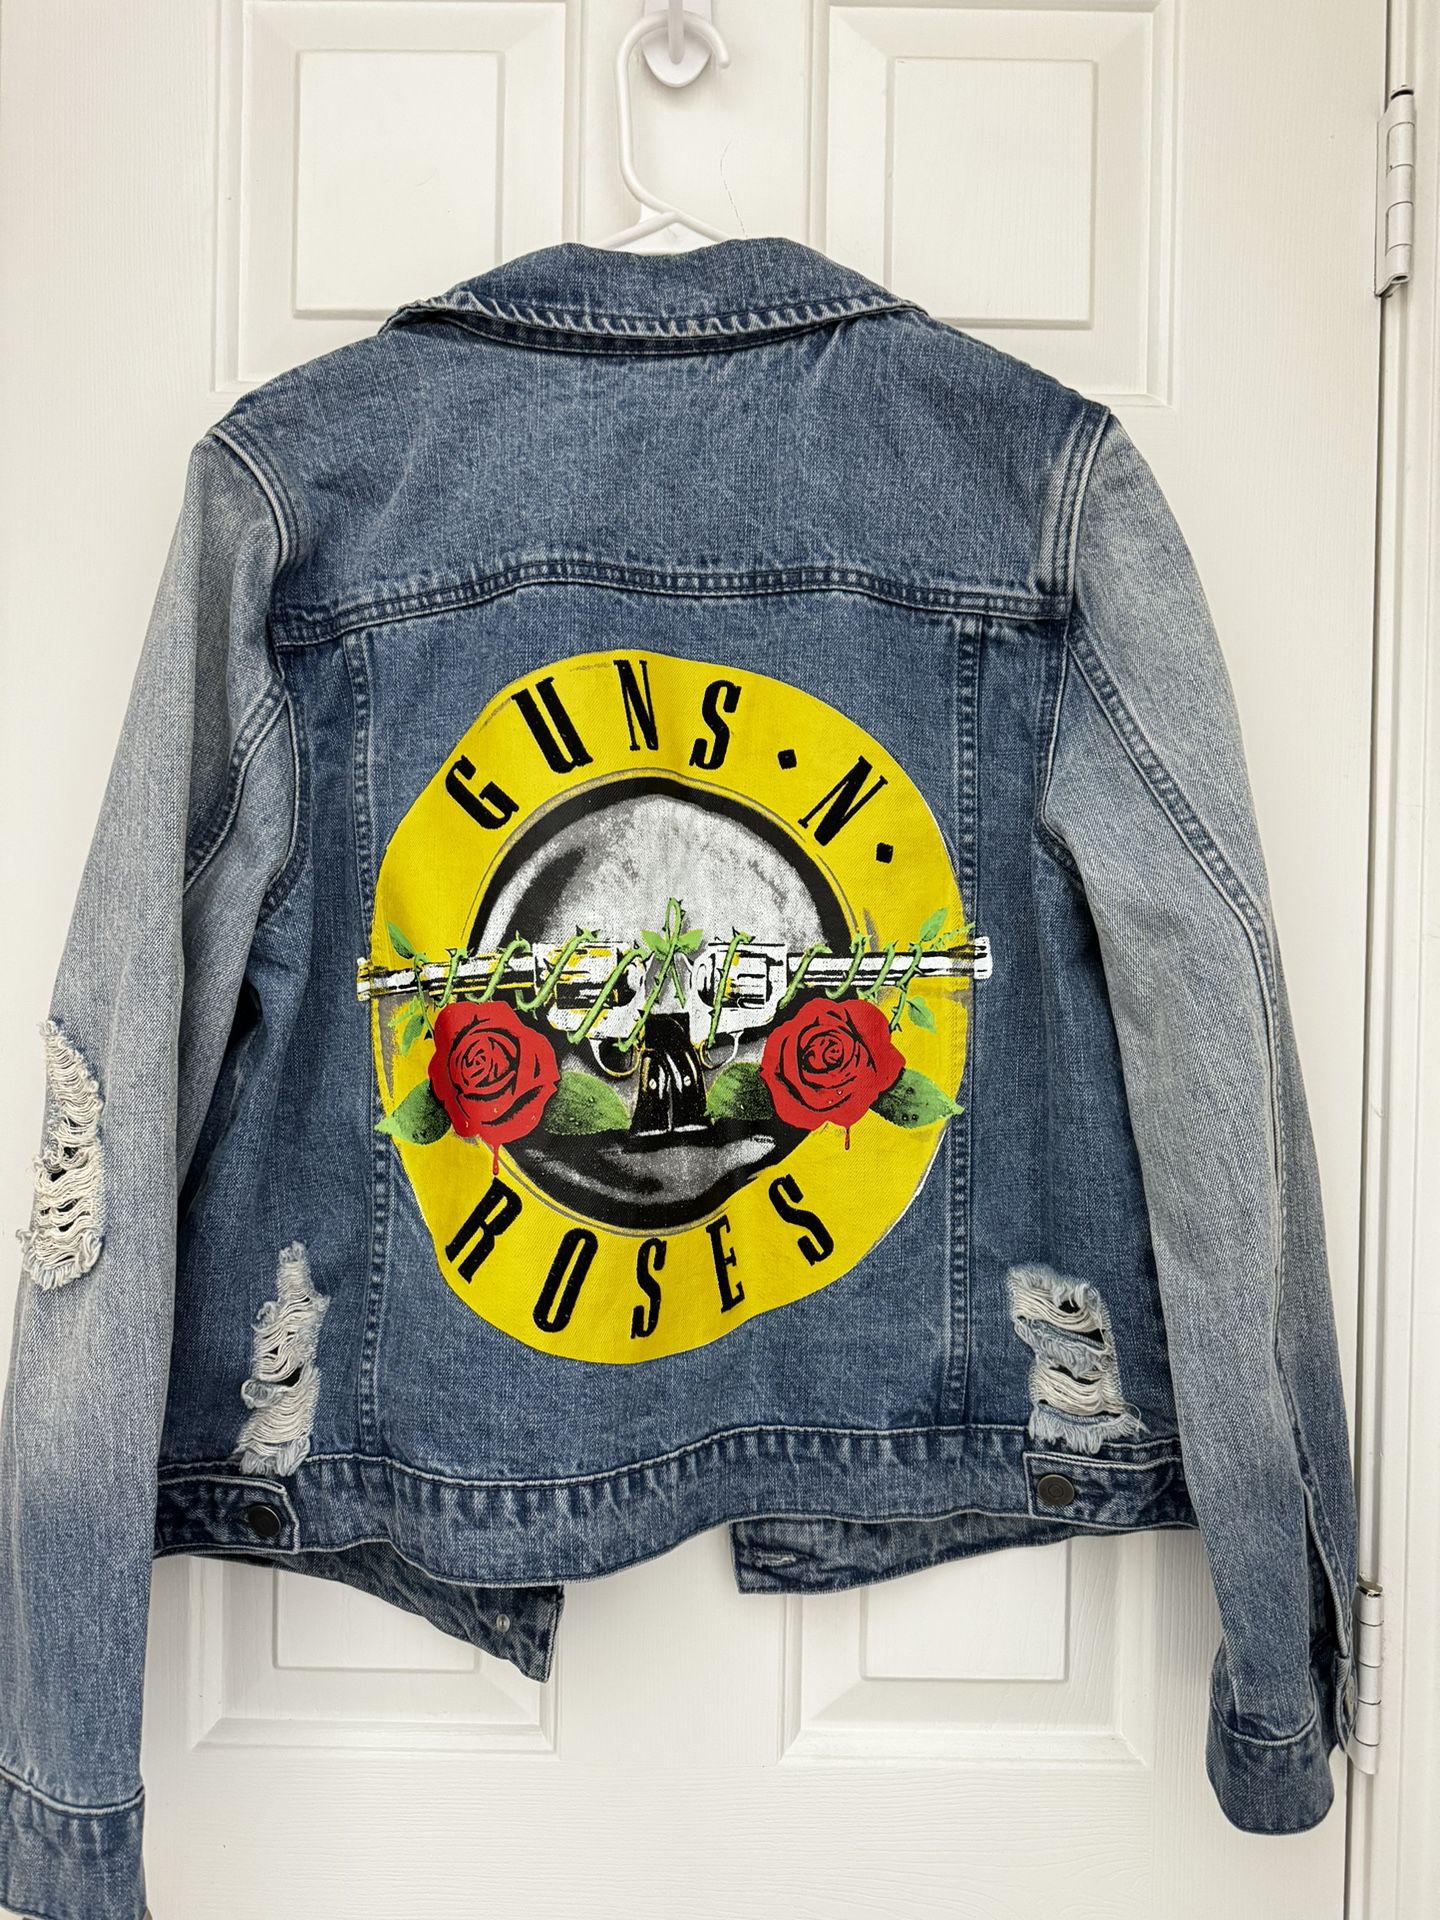 Gun-s Roses Jacket 